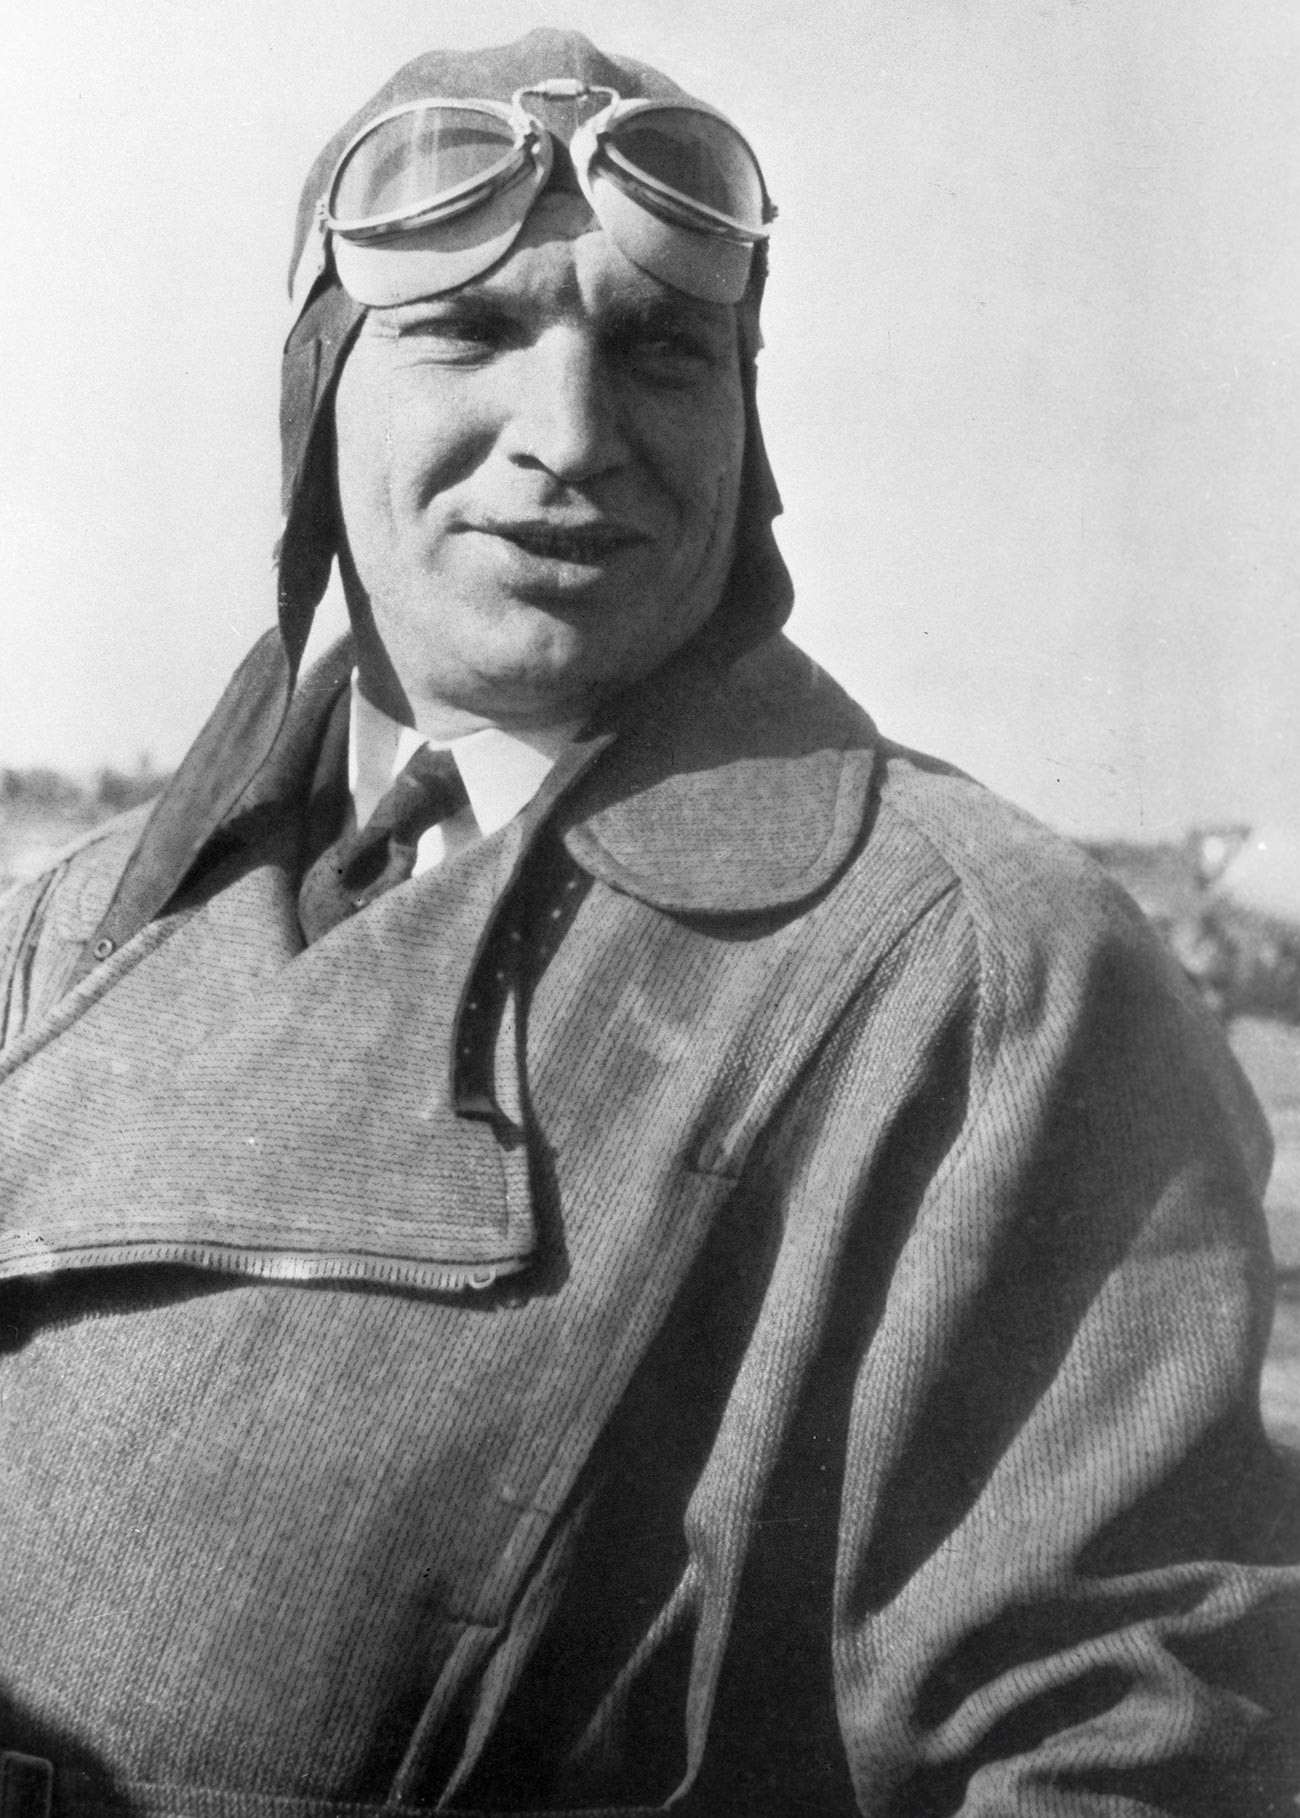 Testni pilot Valerij Čkalov (1904-1938), junak Sovjetske zveze, je umrl 15. decembra 1938 med testiranjem prototipa novega lovca I-180.